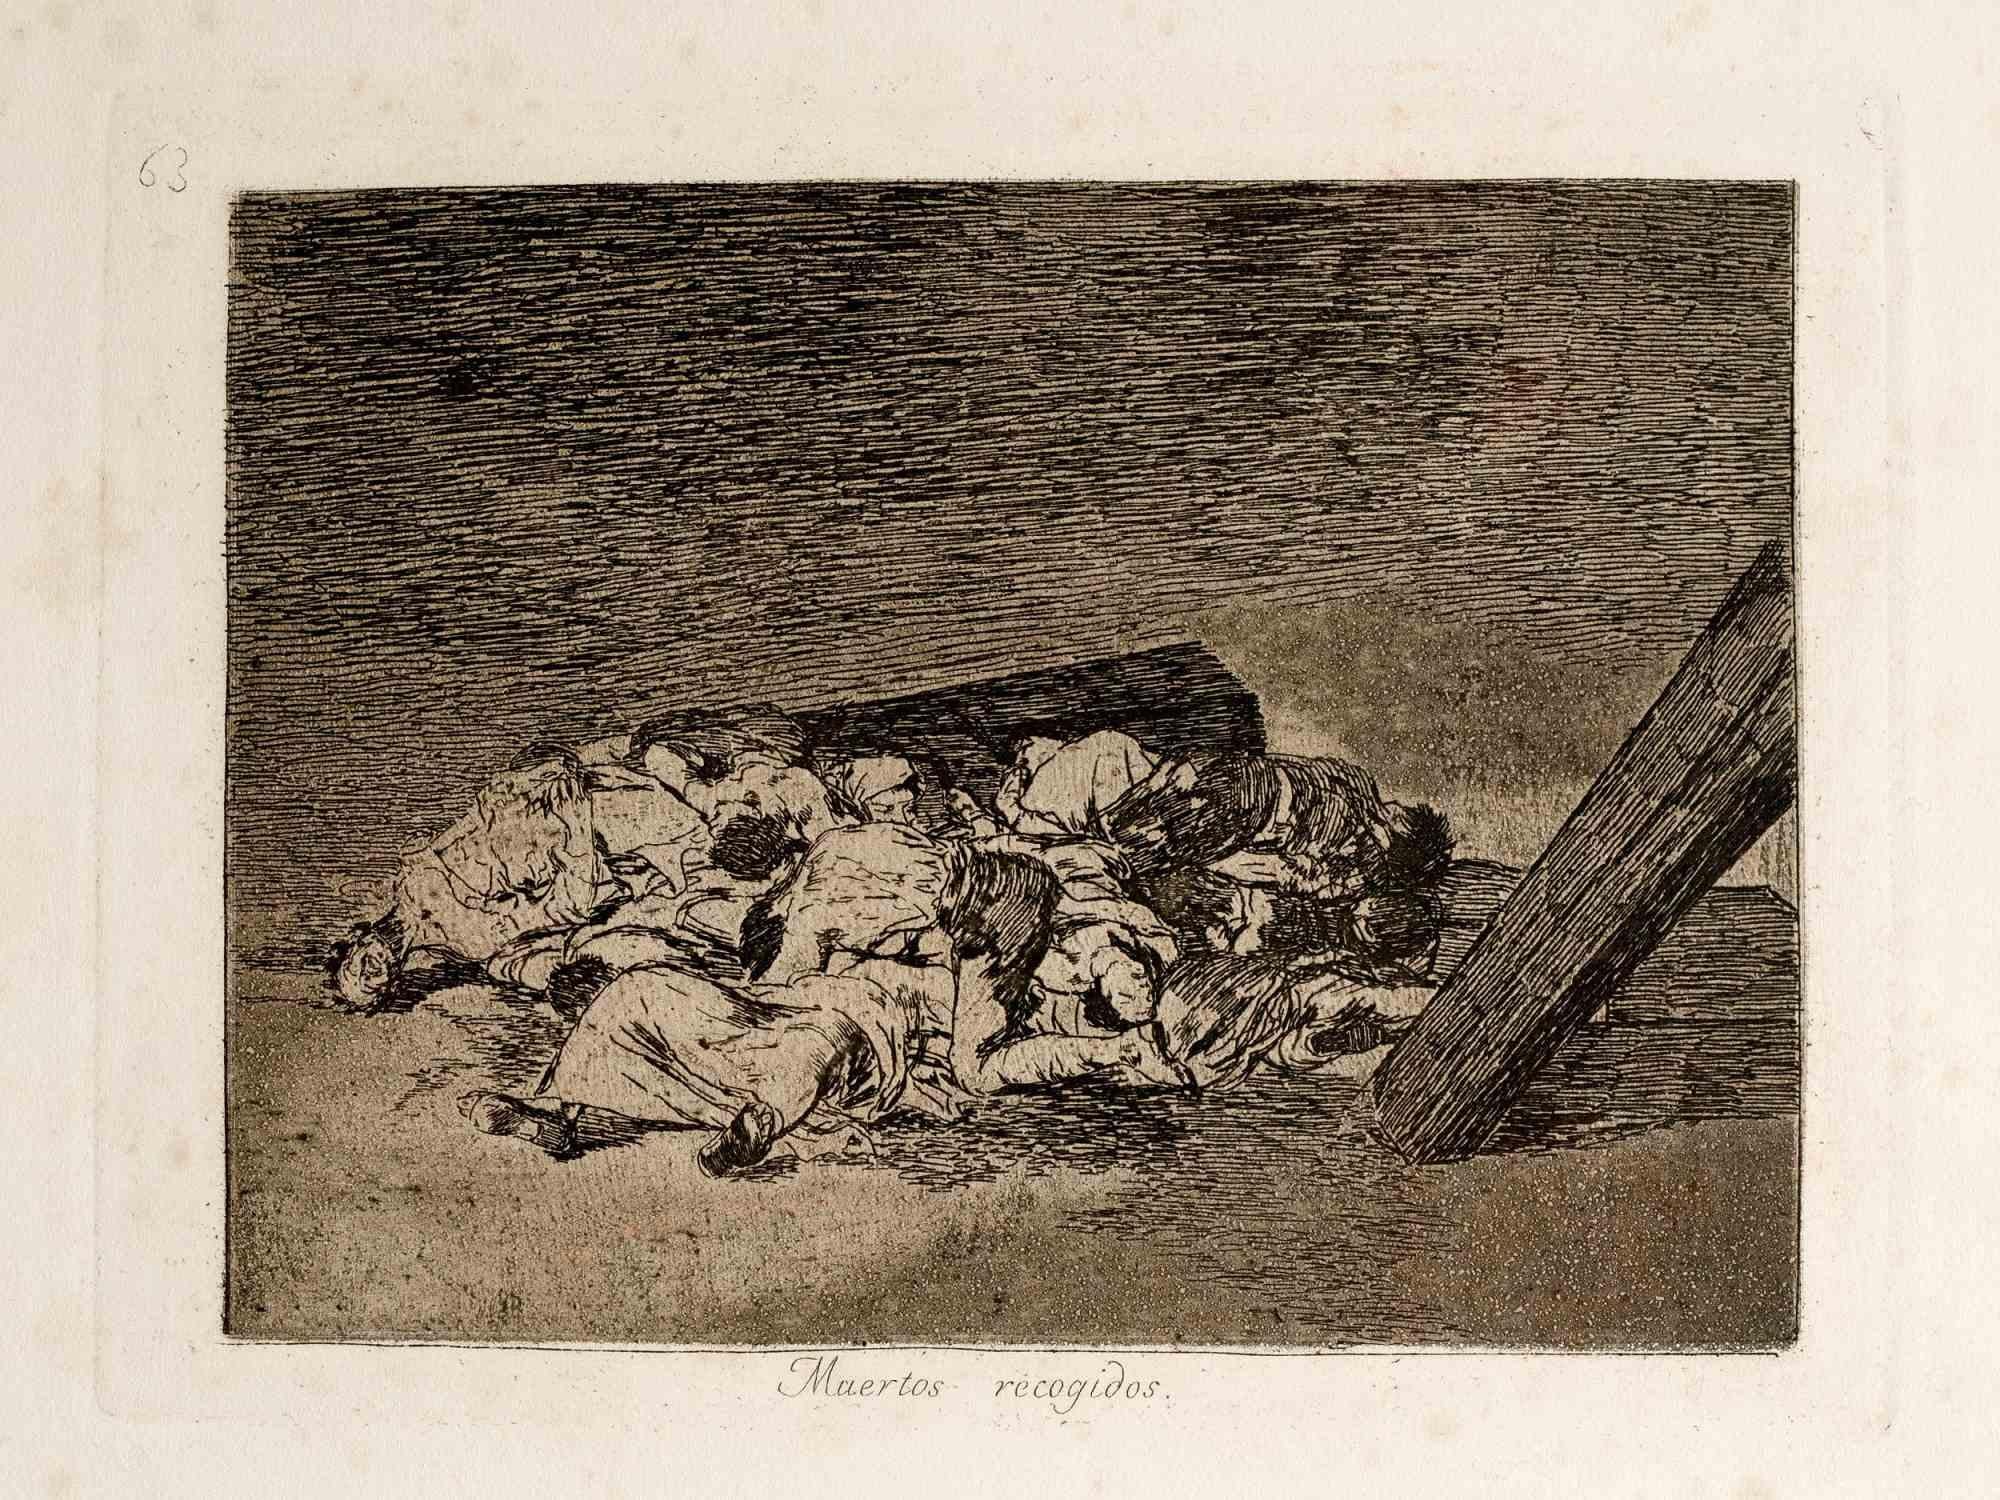 Muertos recogidos est une œuvre d'art moderne originale réalisée par Francisco Goya en 1810. Troisième édition

Gravure en noir et blanc.

Dimensions : Image 18 x 24 cm Feuille 33 x 24 cm. 

Bon état, sauf quelques rousseurs. 

L'œuvre est la